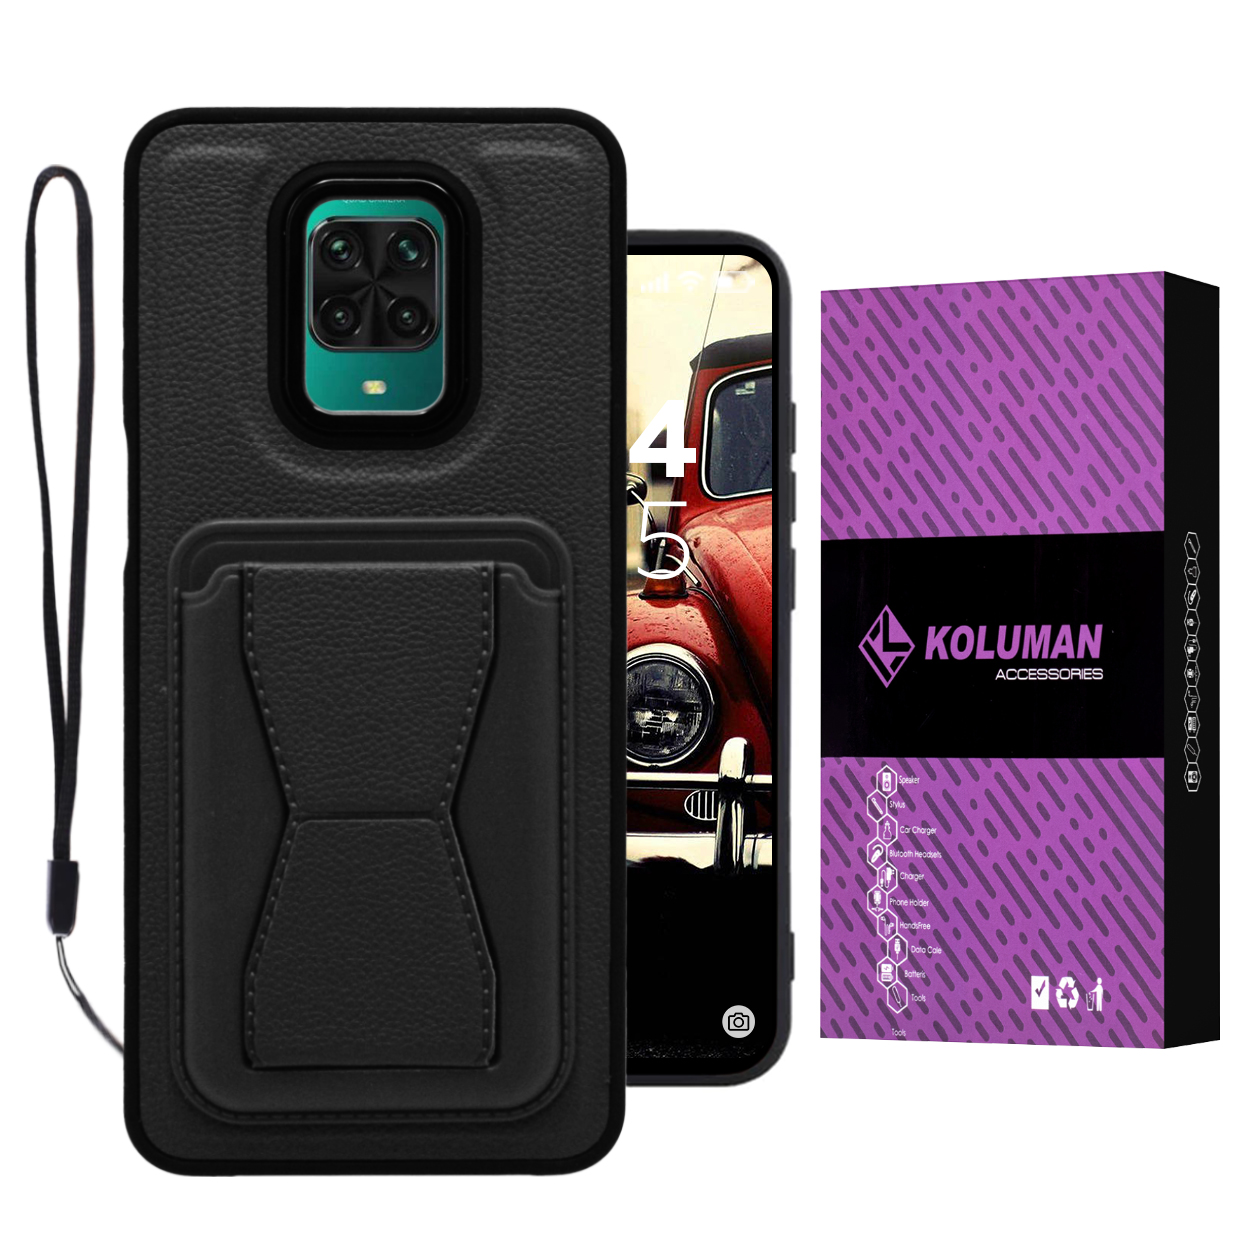 کاور کلومن مدل Bali مناسب برای گوشی موبایل شیائومی Redmi Note 9S / Note 9 Pro به همراه بندآویز